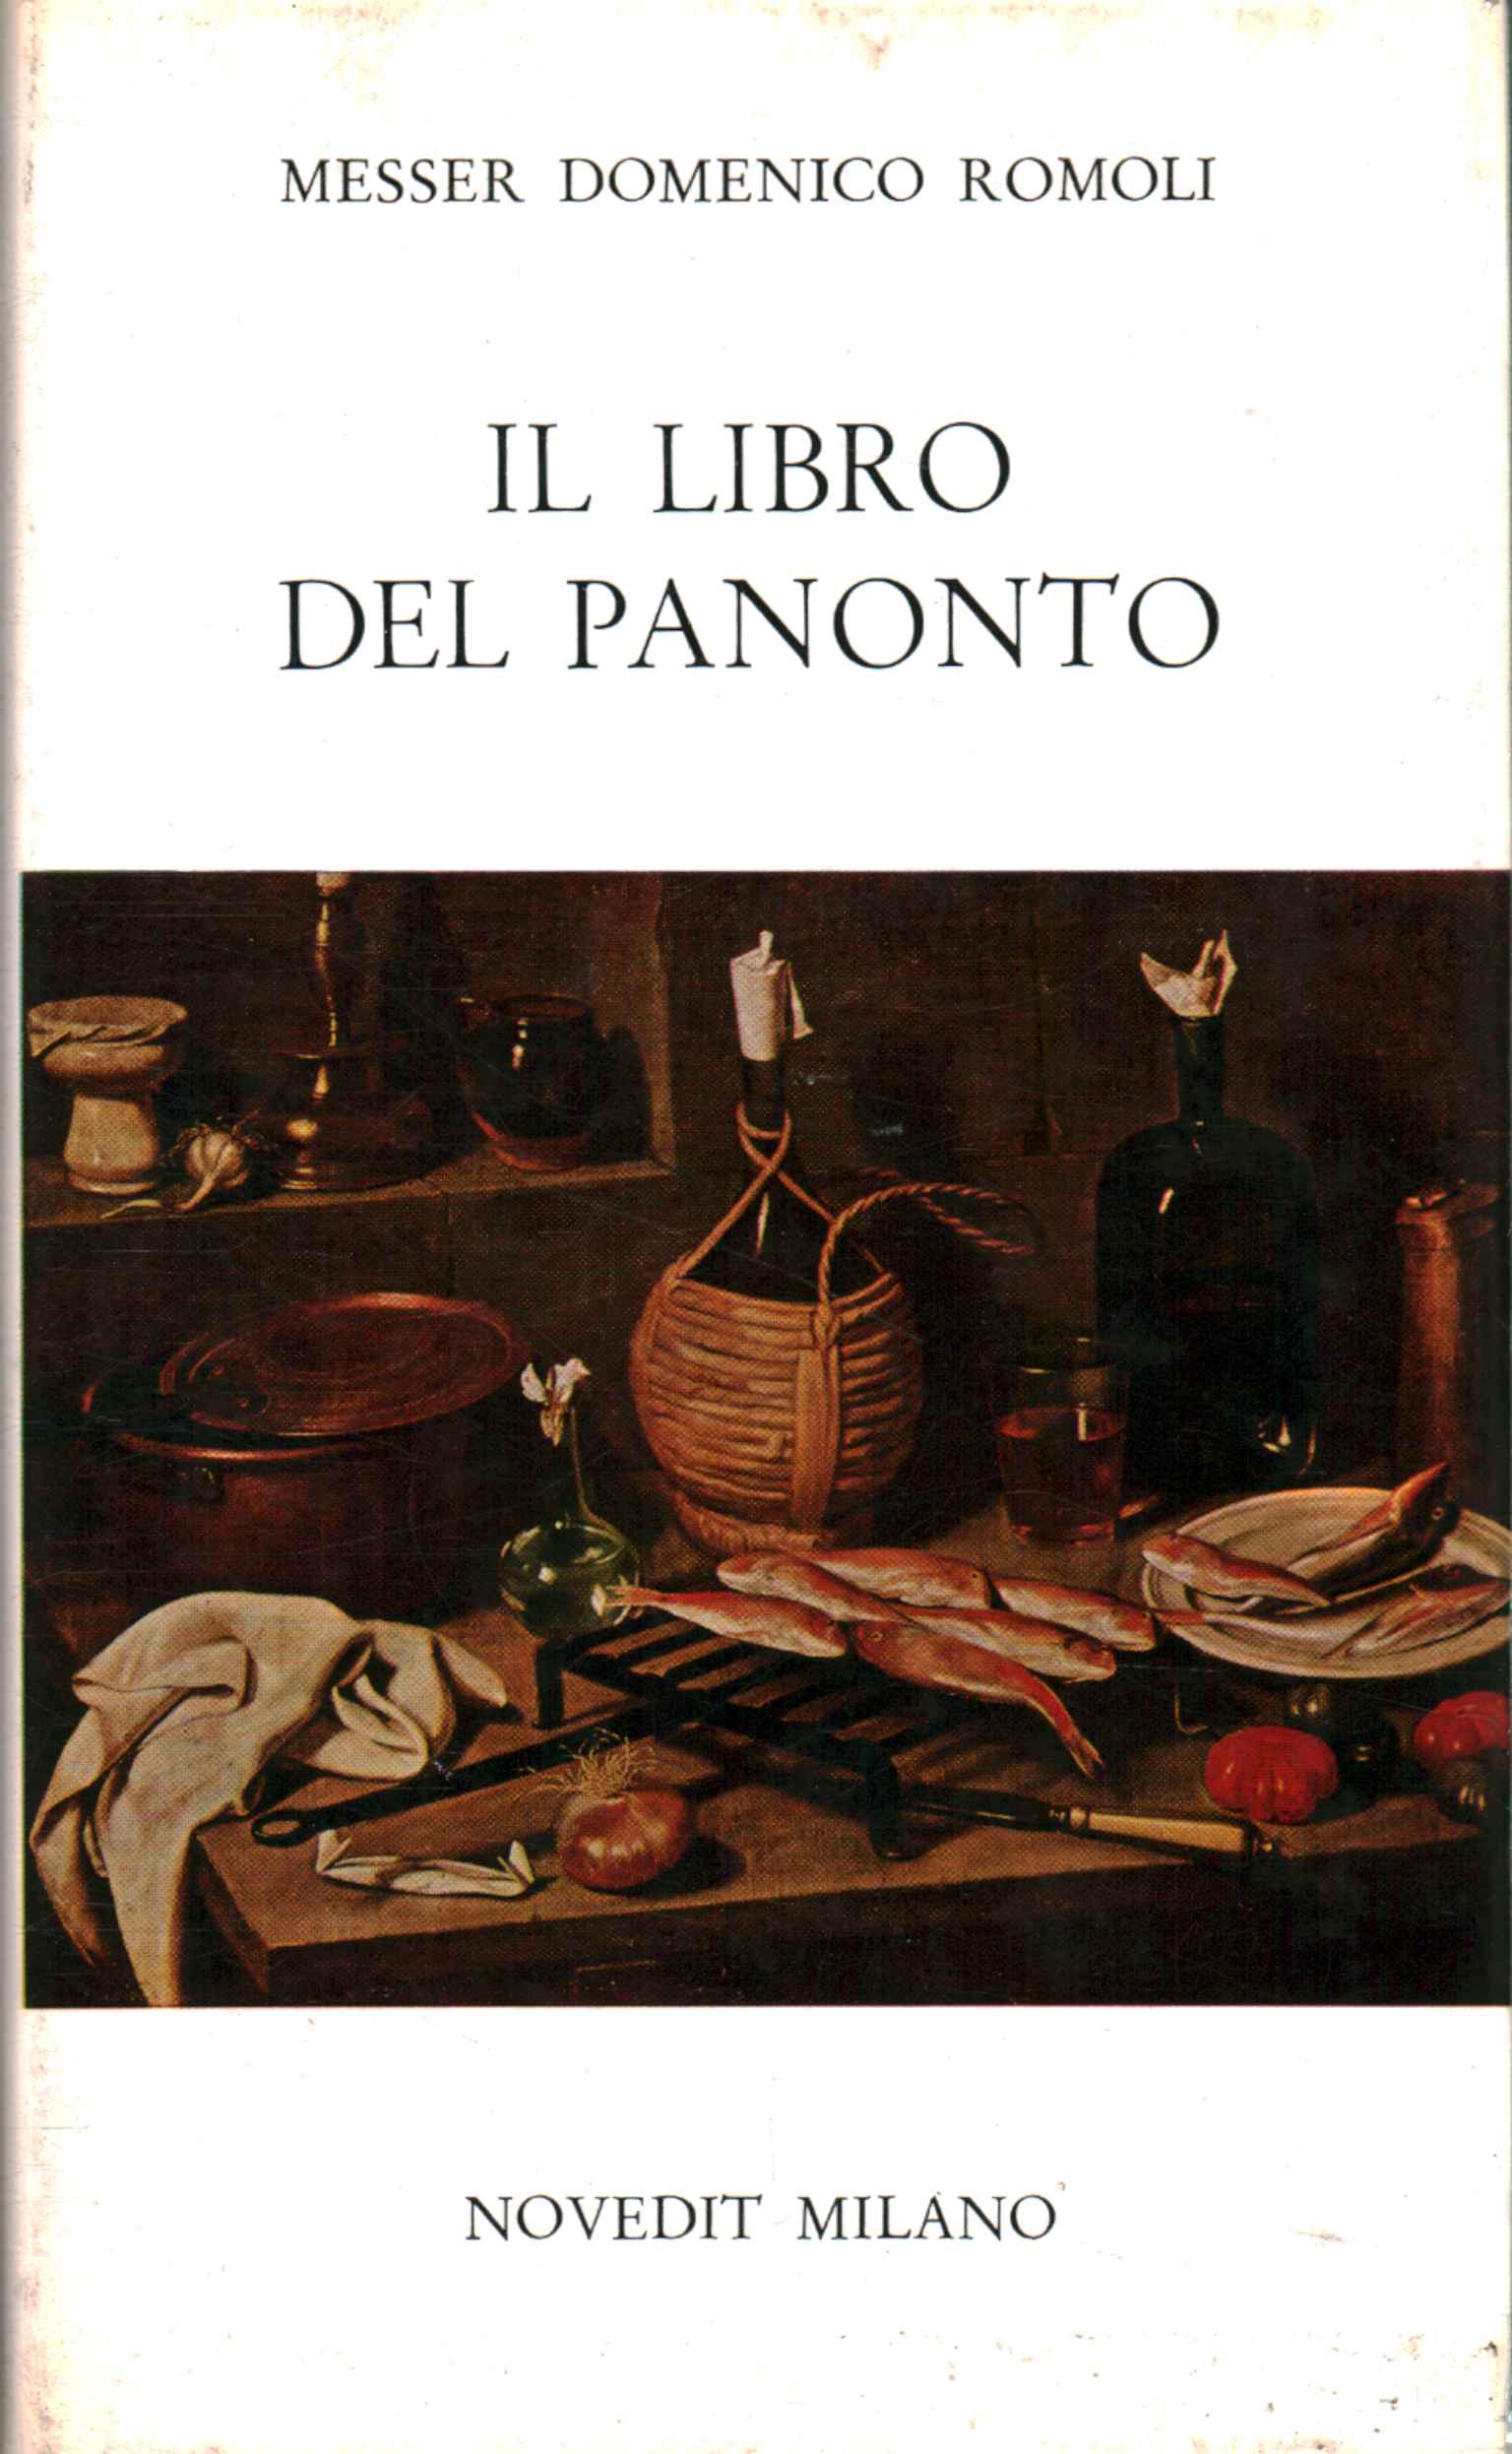 The panonto book